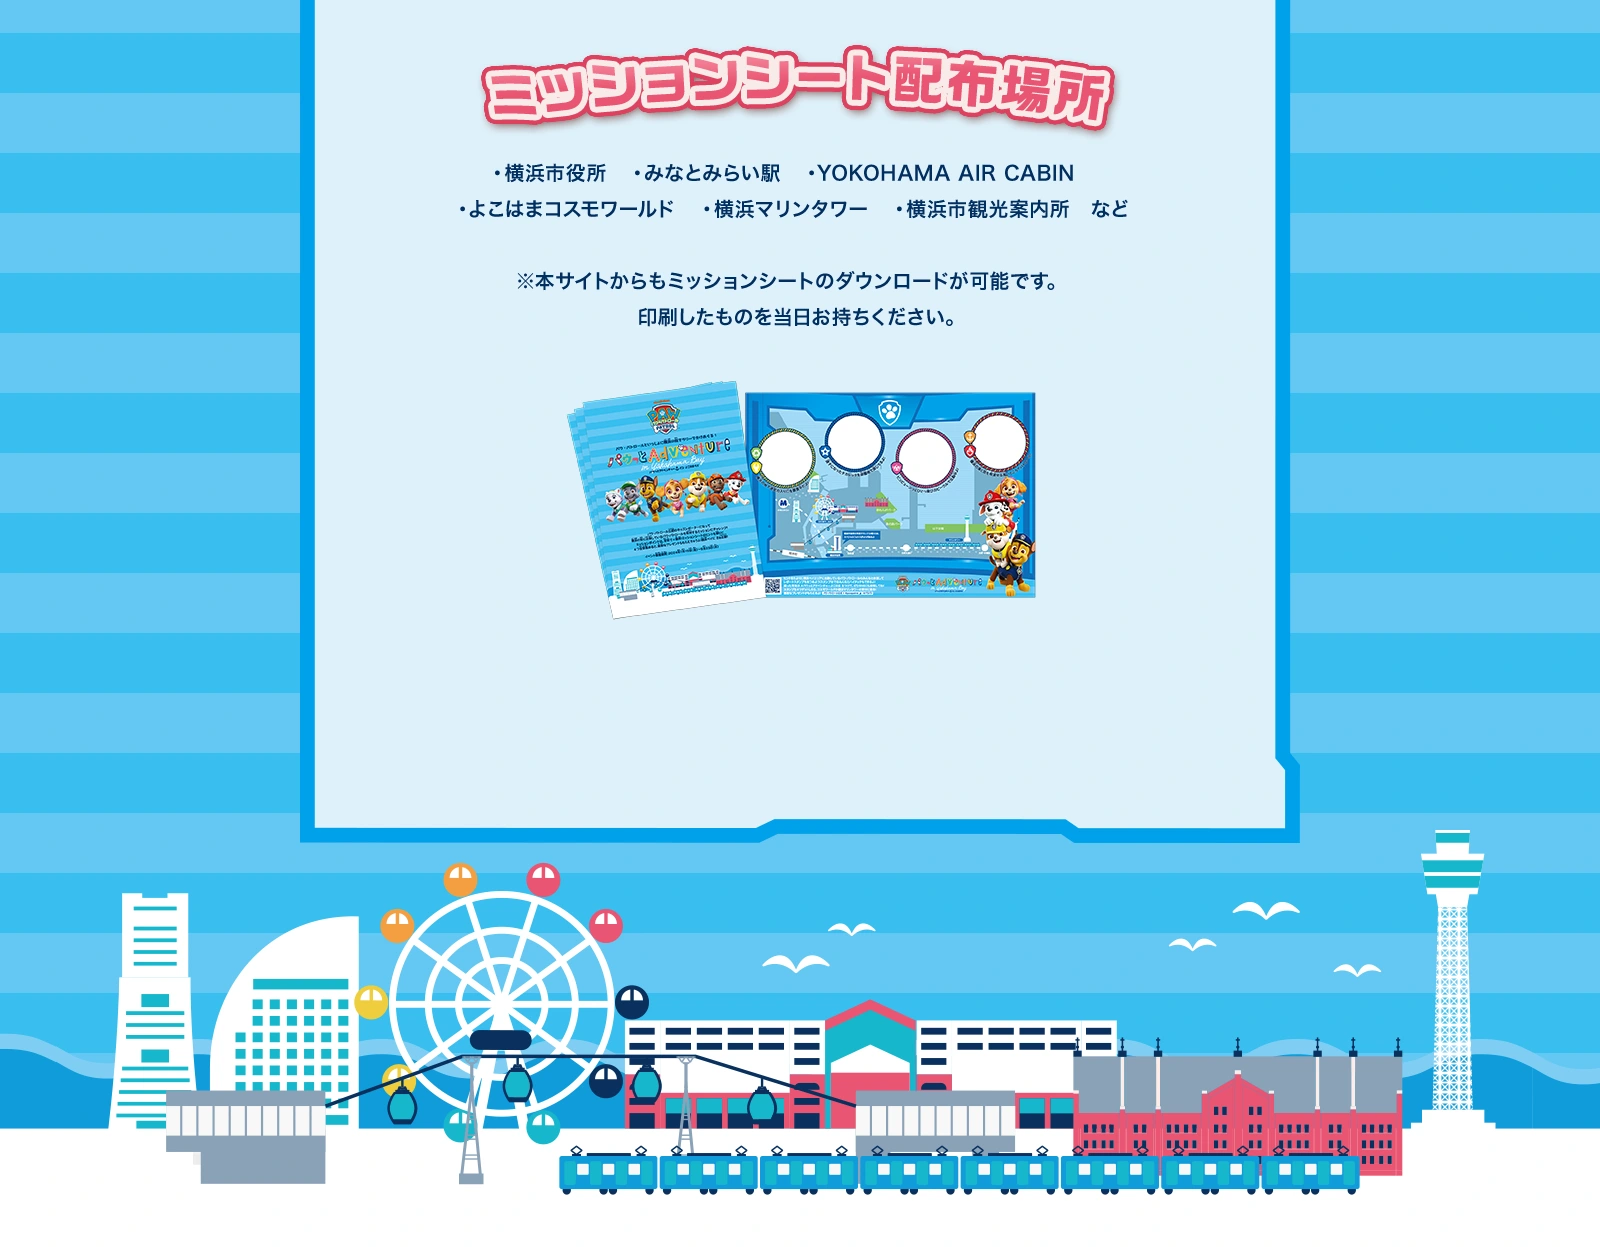 ミッションシート配布場所：横浜市役所、みなとみらい駅、YOKOHAMA AIR CABIN、よこはまコスモワールド、よこはまマリンタワー、横浜市観光案内所など　※本サイトからもミッションシートのダウンロードが可能です。印刷したものを当日お持ちください